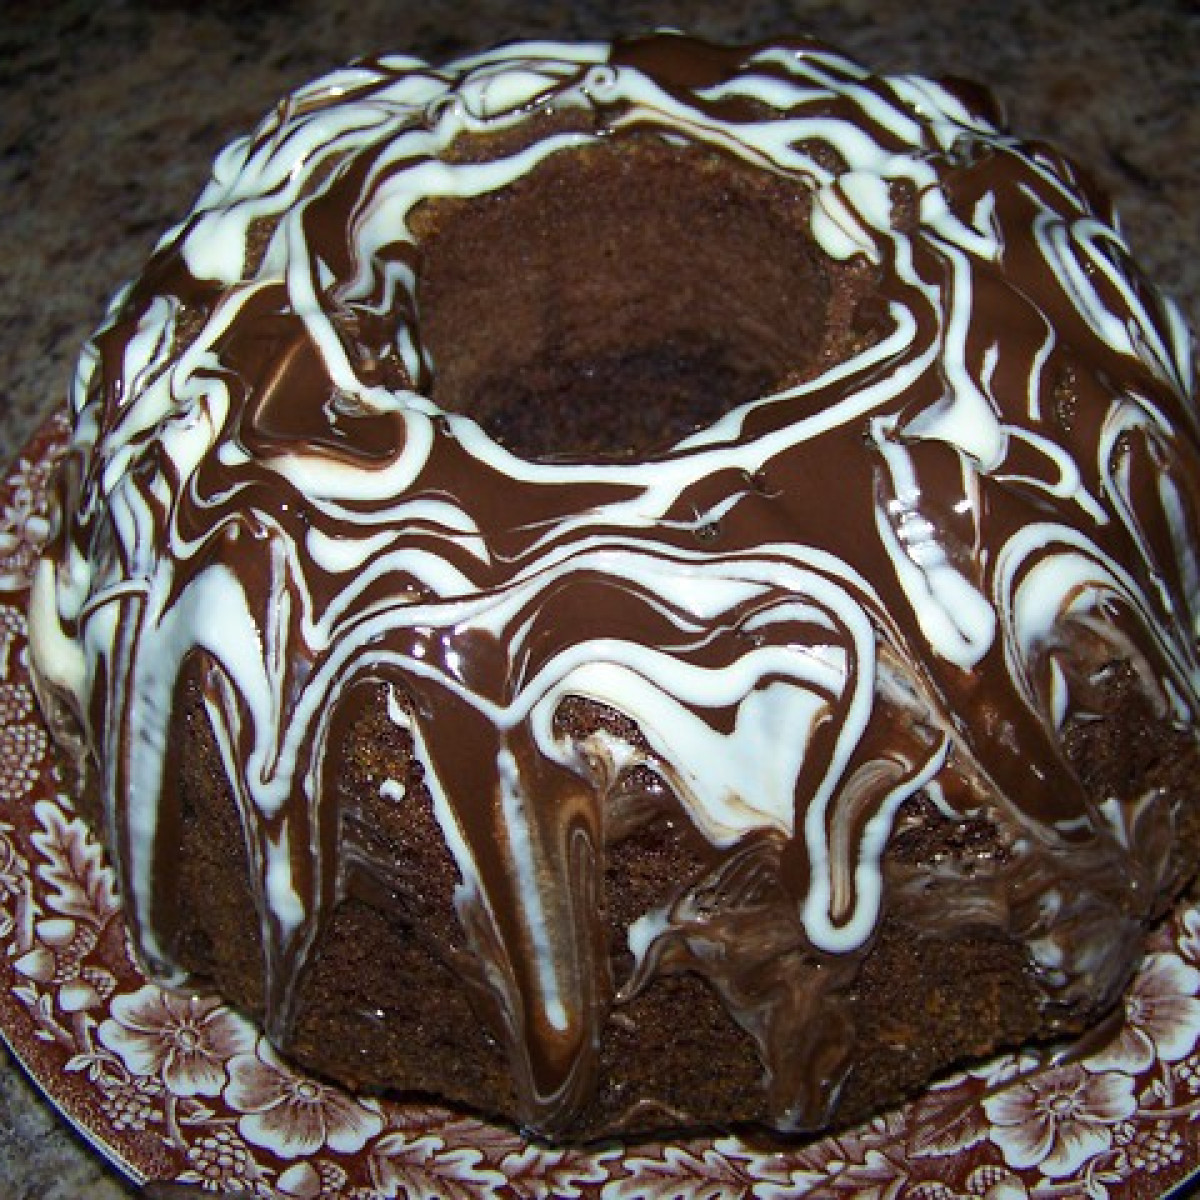 Szybka babka czekoladowa z kawałkami czekolady.